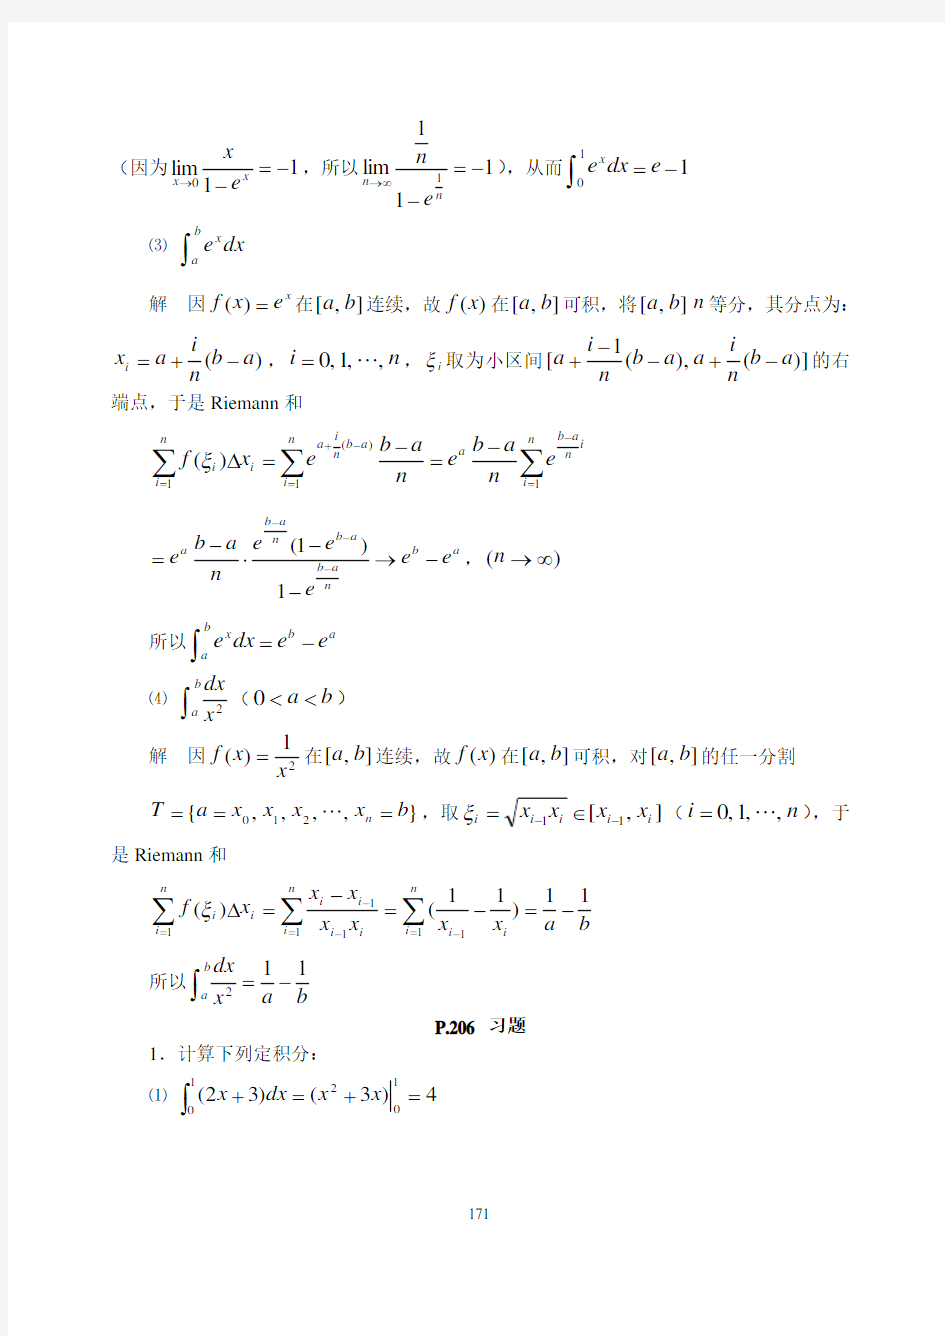 《数学分析》(华师大二版)课本上的习题9